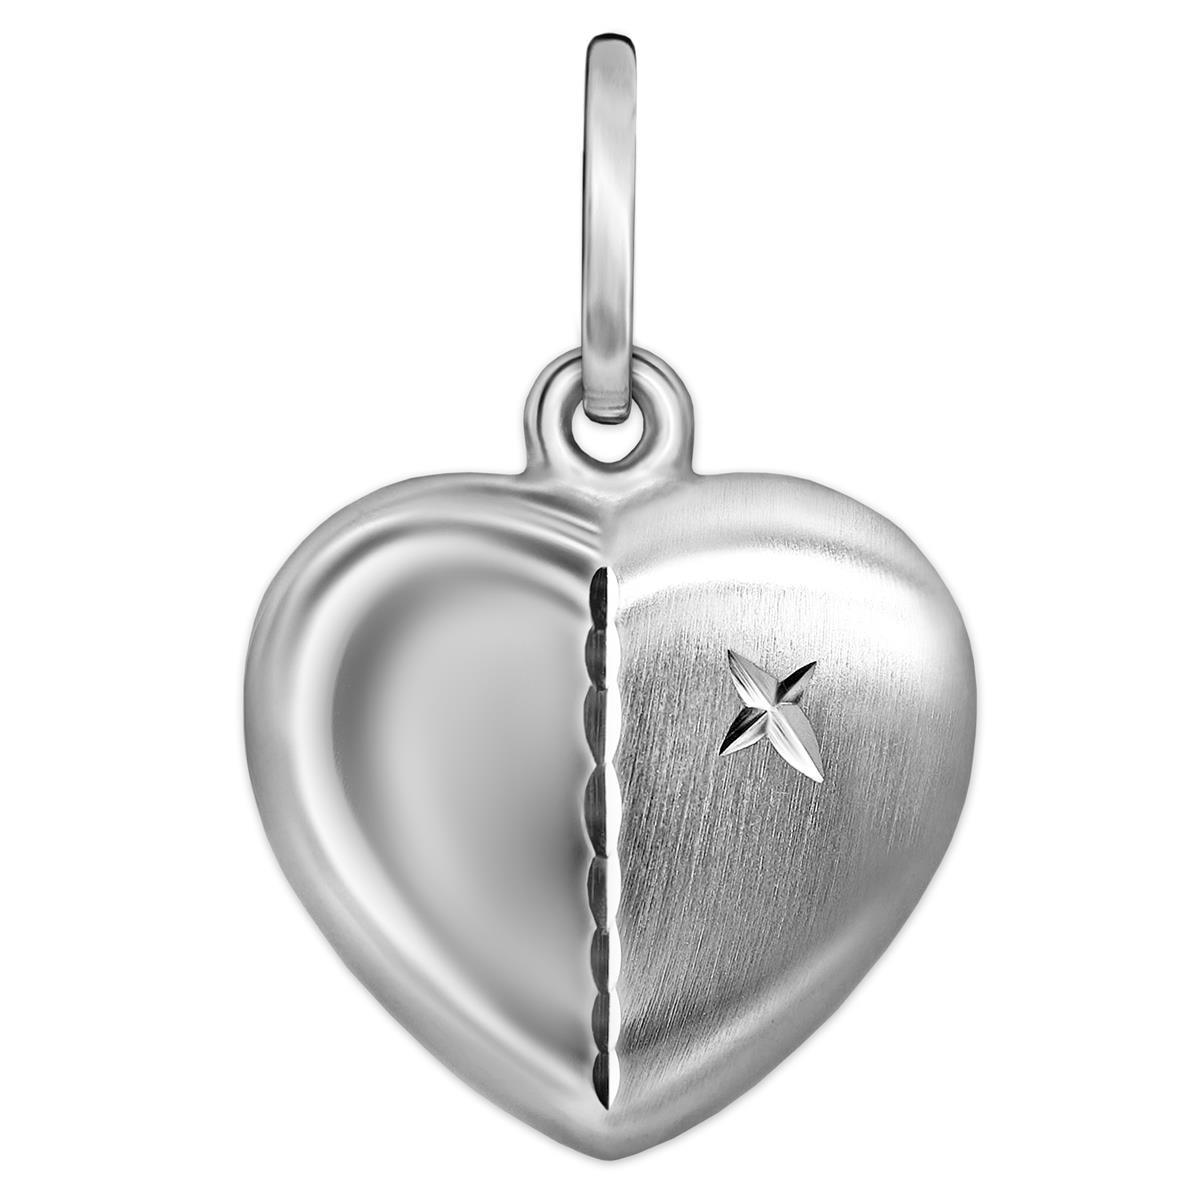 Silberner Herz 12 mm gewölbt teilmattiert mit Stern & Zierlinie im Diamantschliff STERLING SILBER 925 rhodiniert